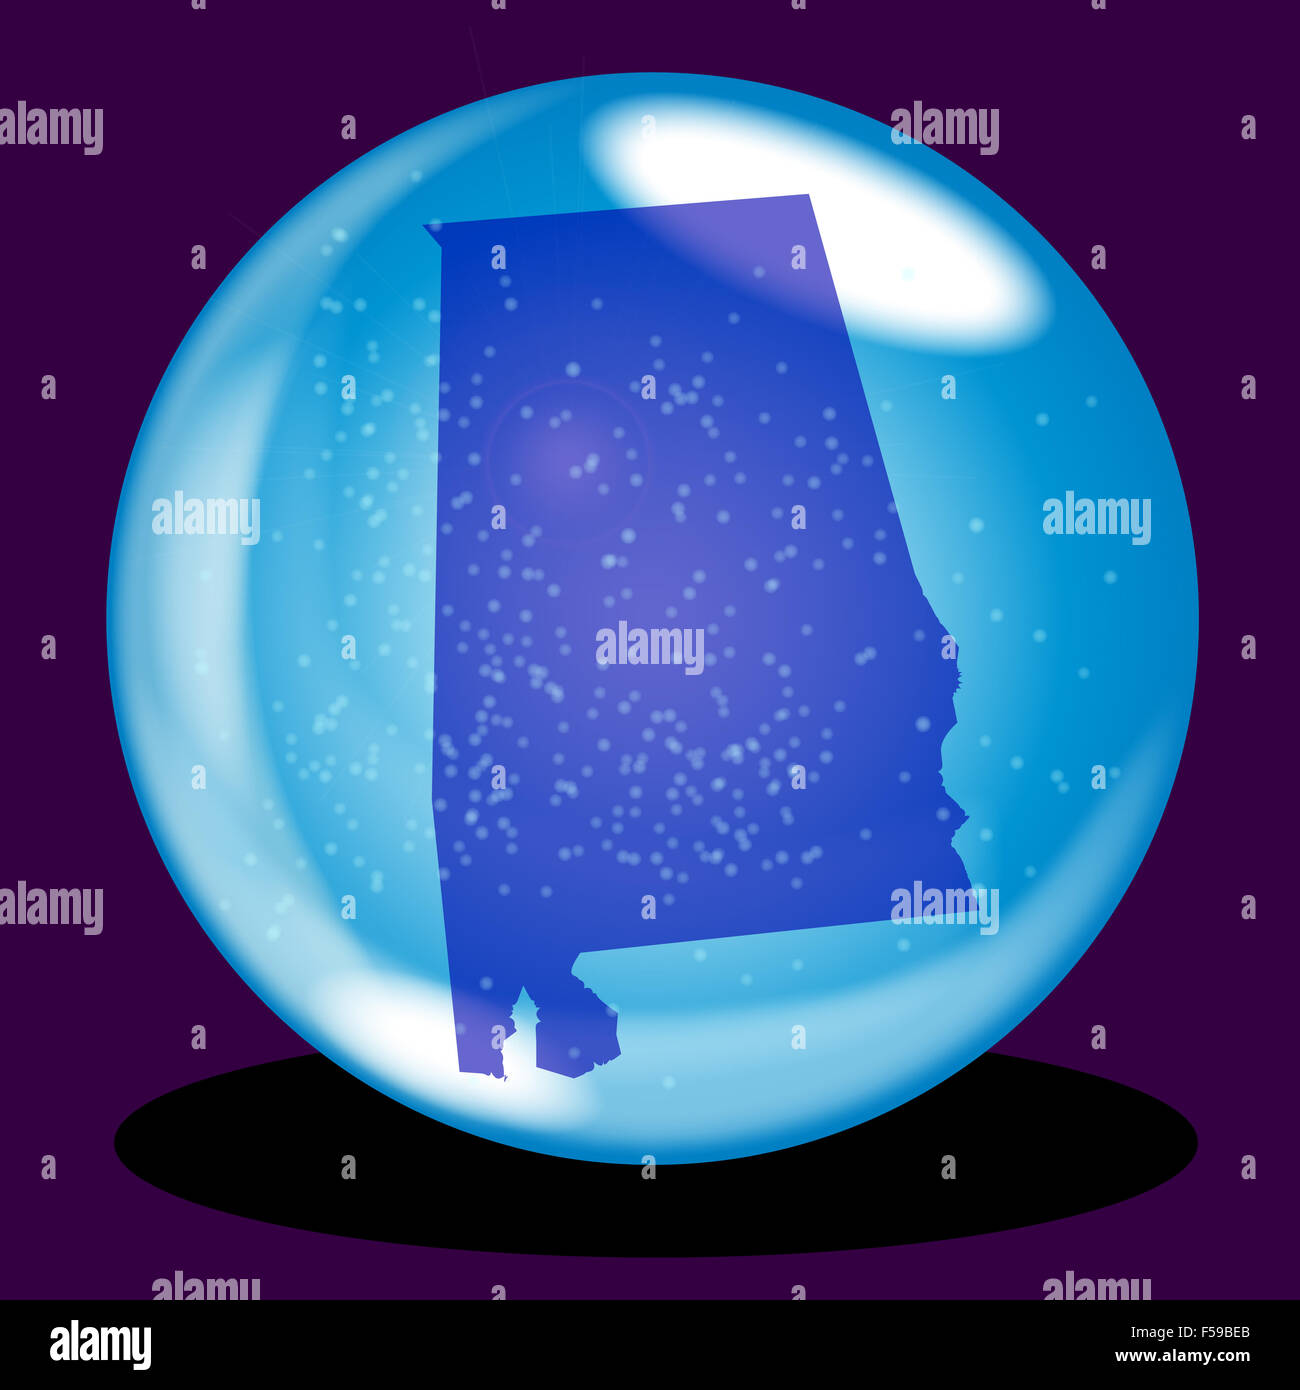 Une boule de cristal avec l'état de l'Alabama et la carte neige sur fond violet Banque D'Images